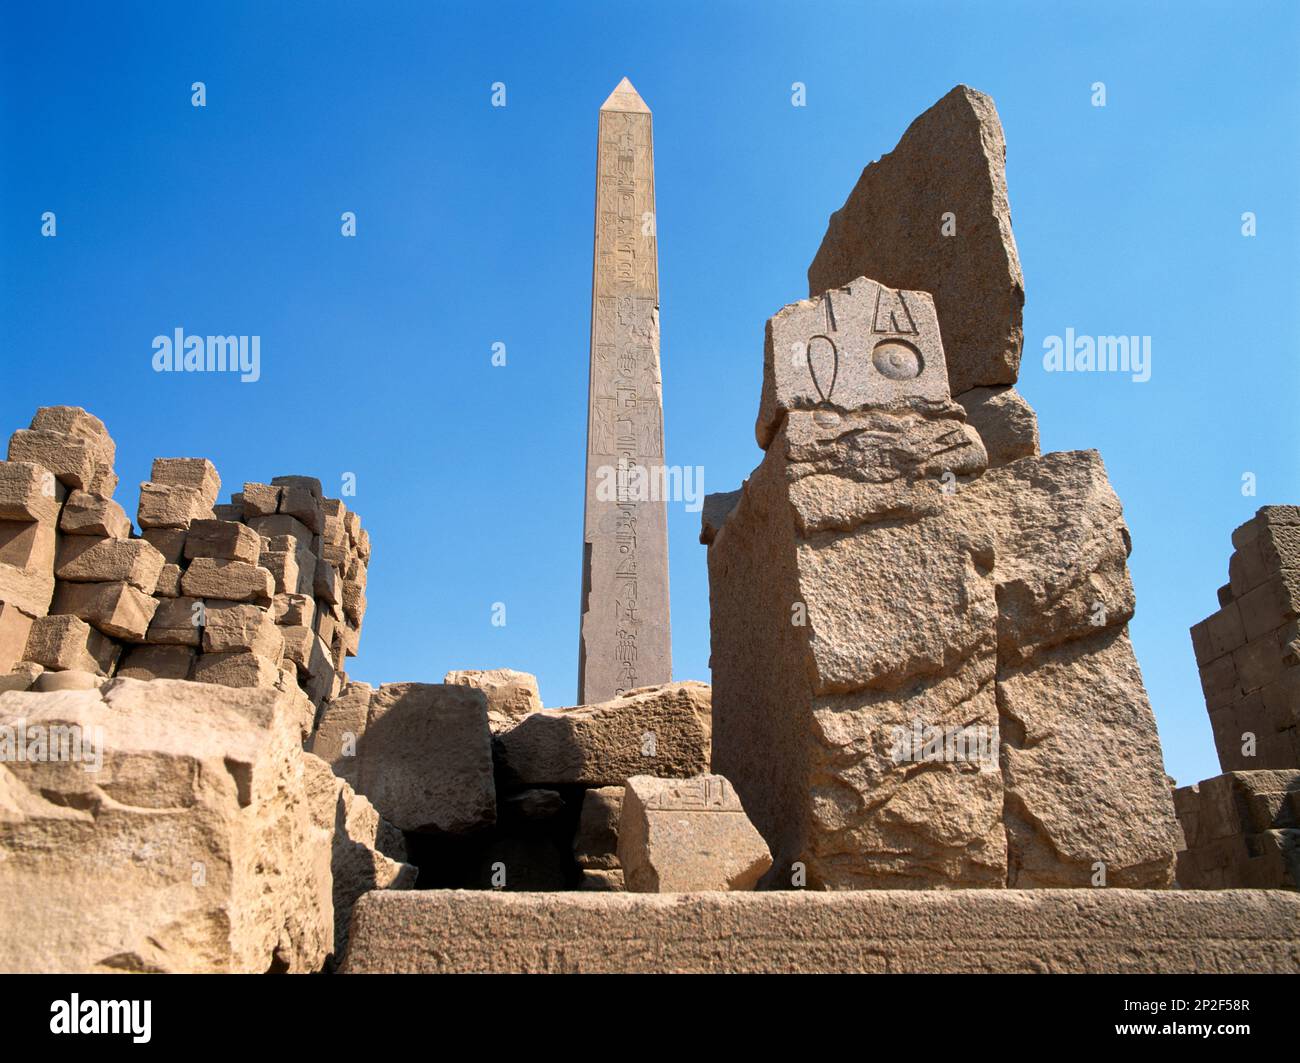 Karnak Egypt Hatshepsut's Obelisk And Ruins Stock Photo